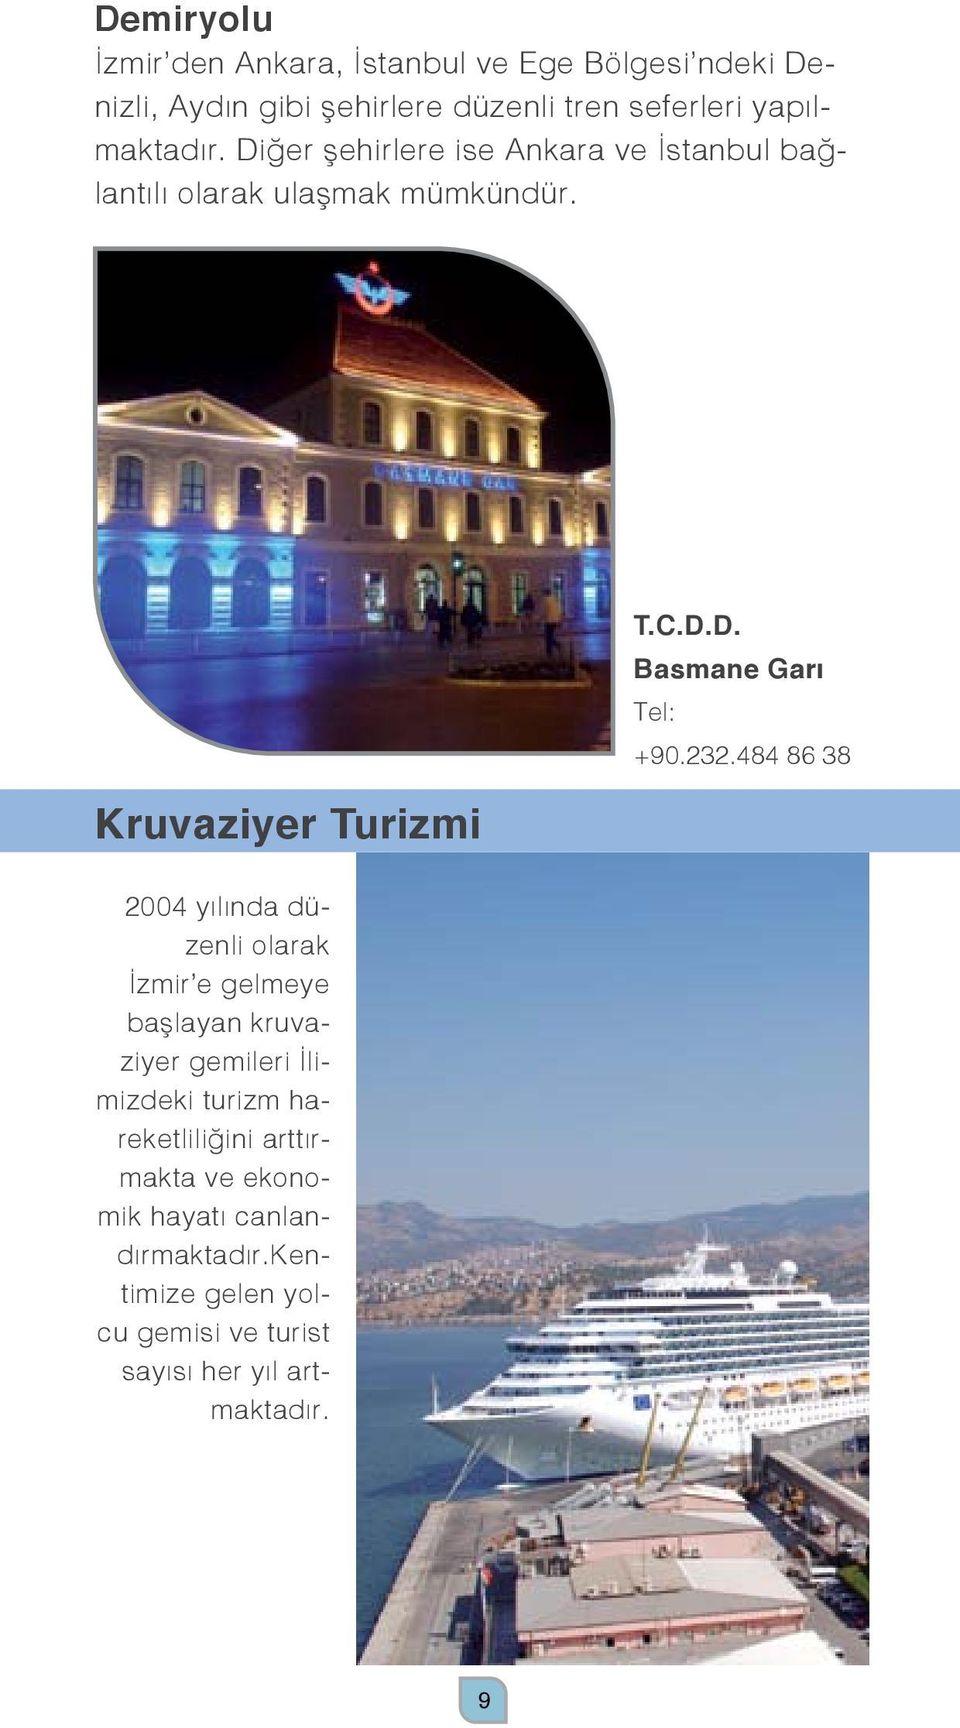 Kruvaziyer Turizmi 2004 yılında düzenli olarak İzmir e gelmeye başlayan kruvaziyer gemileri İlimizdeki turizm